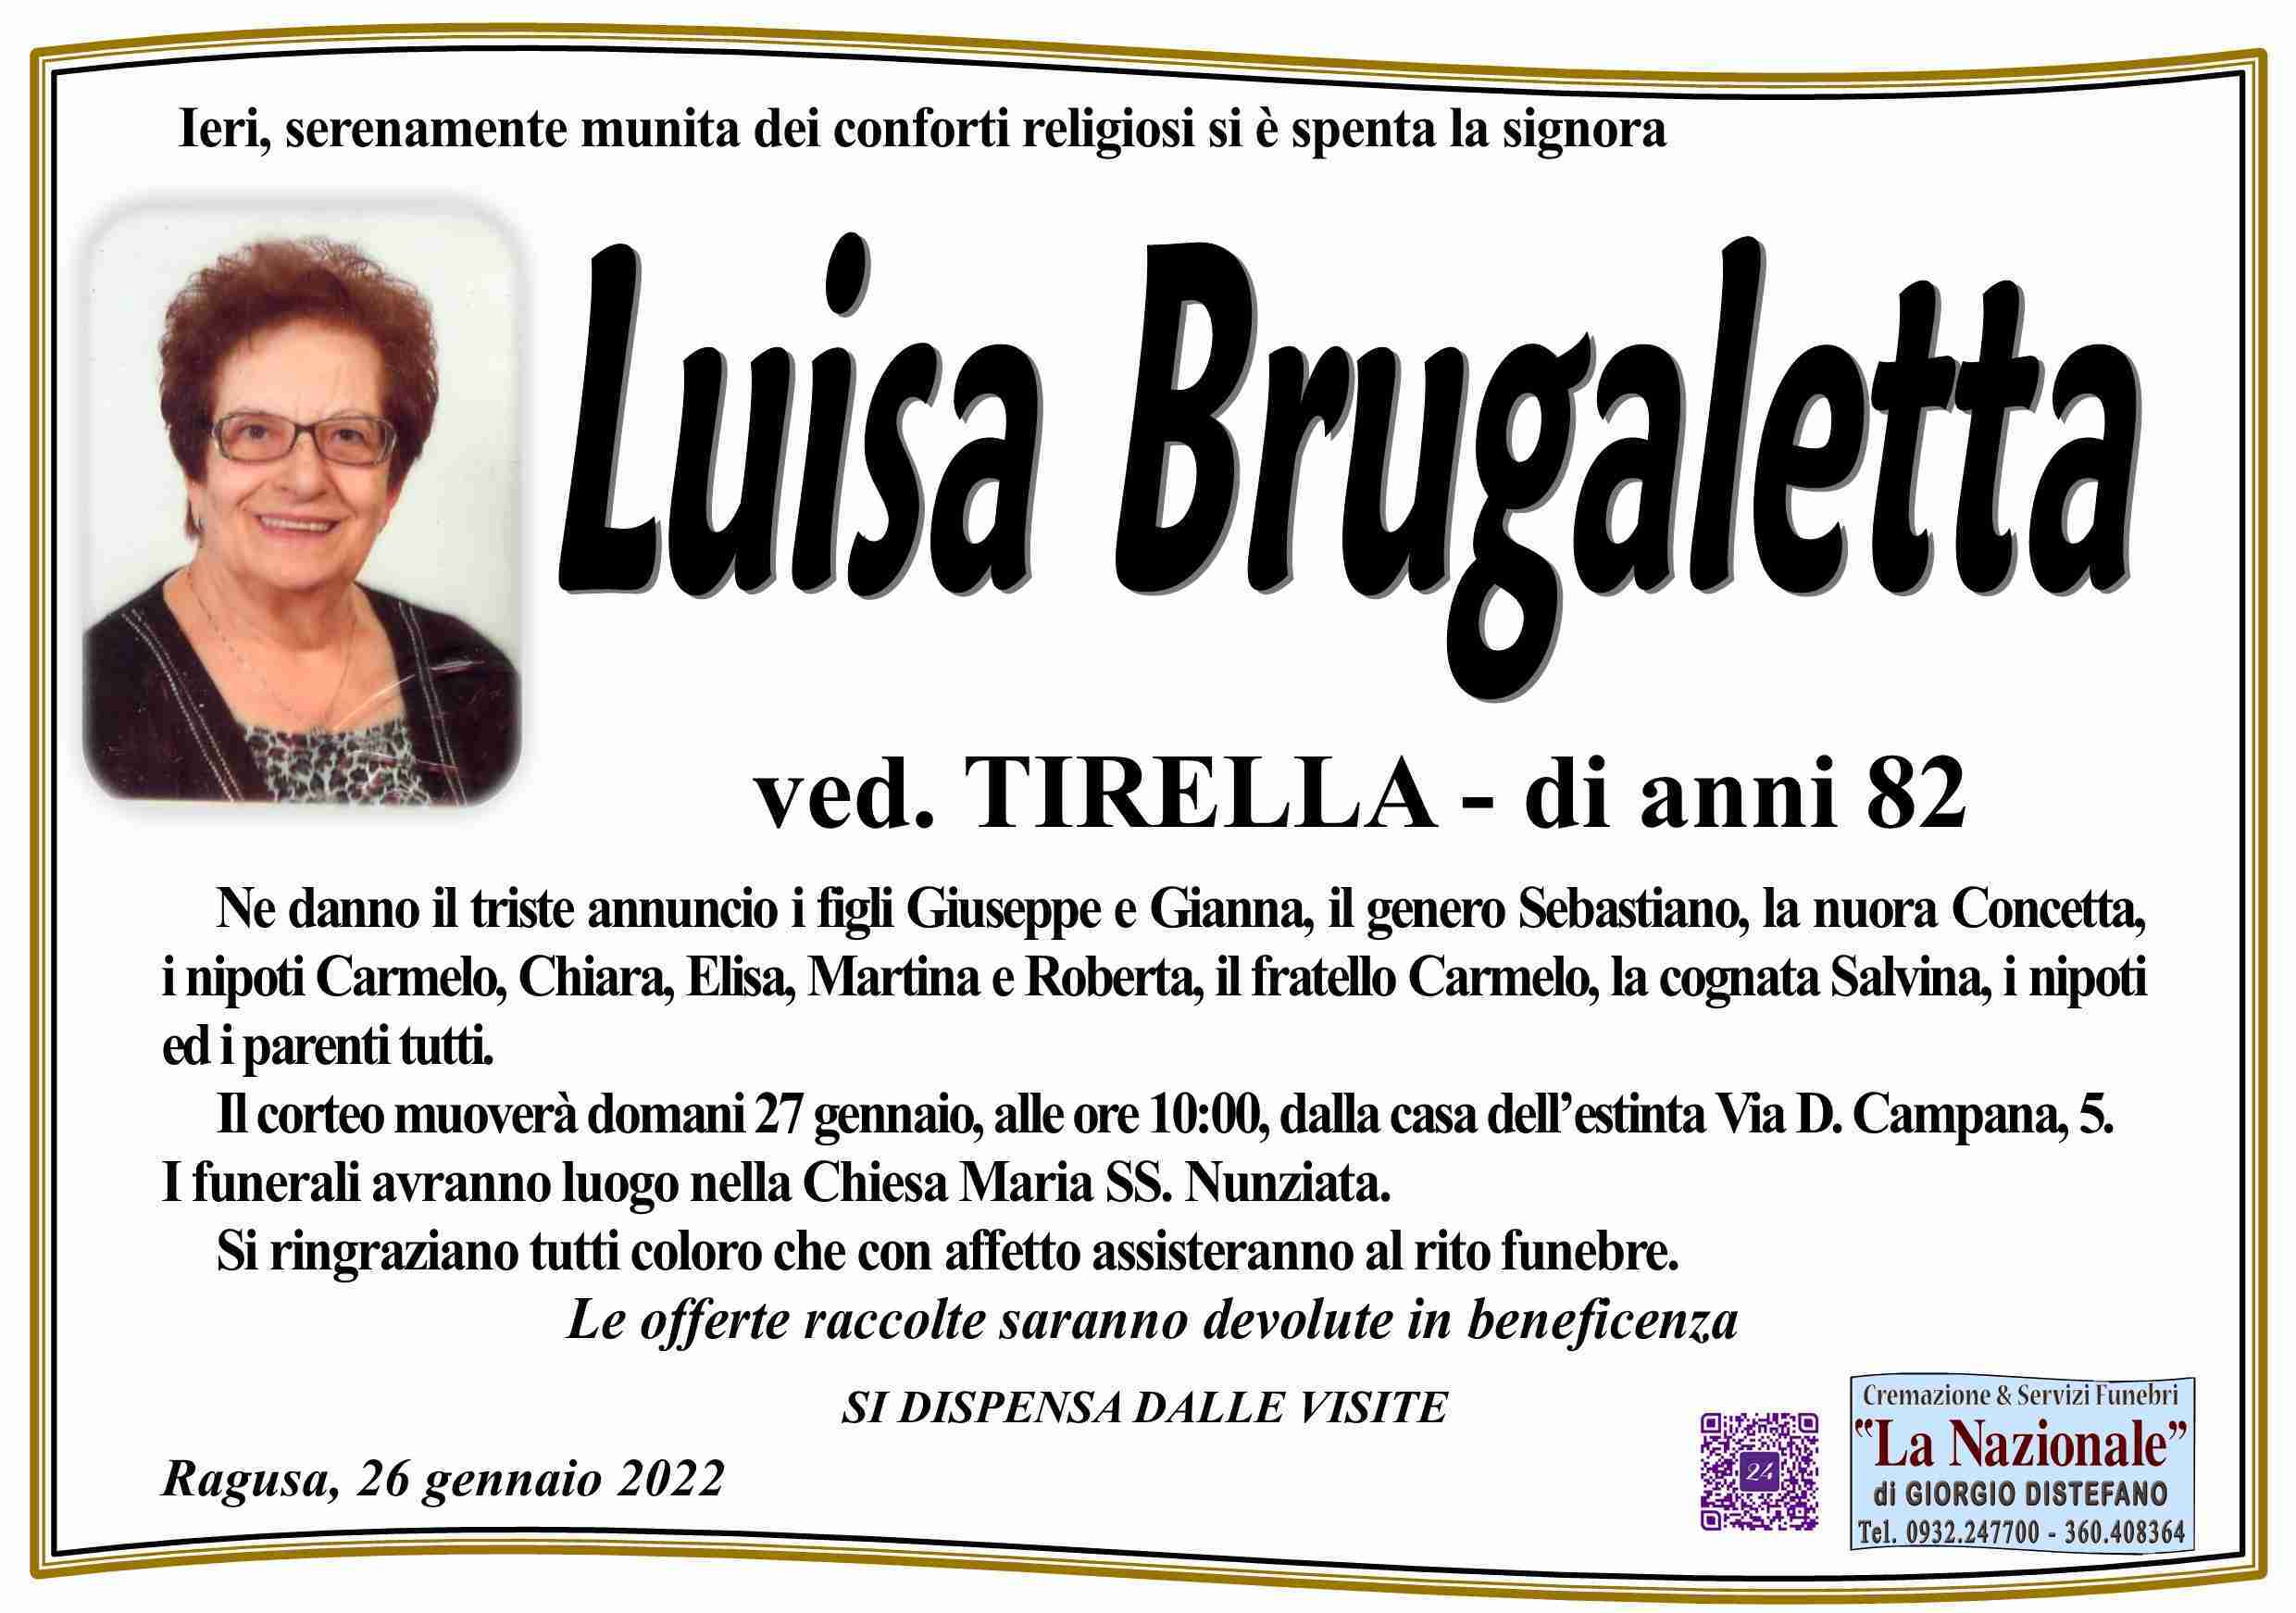 Luisa Brugaletta